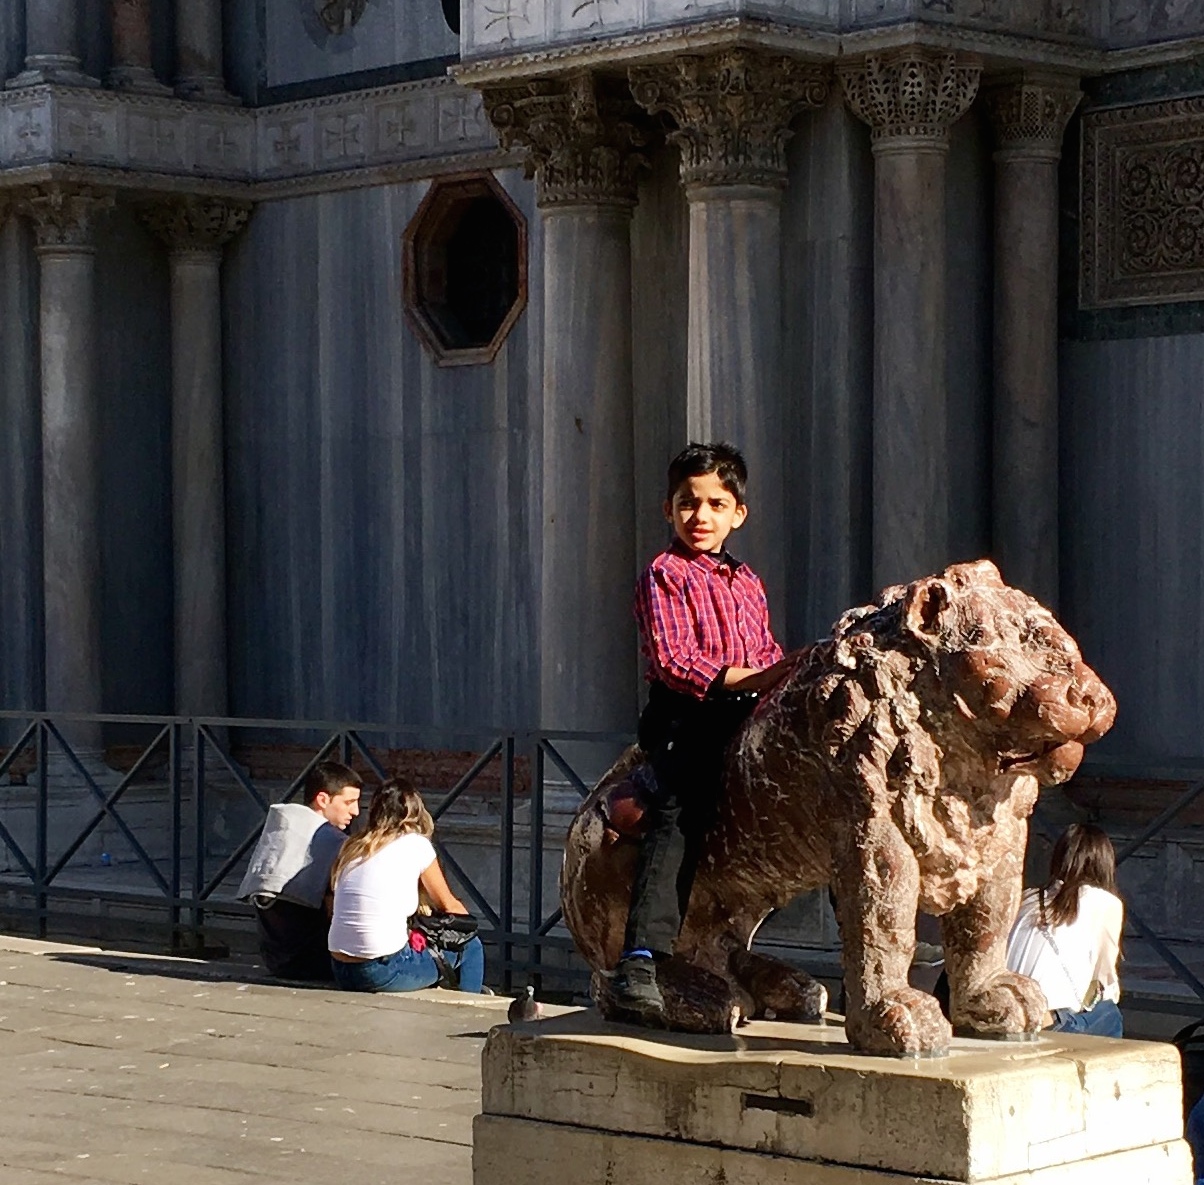 Kids in Venice Italy